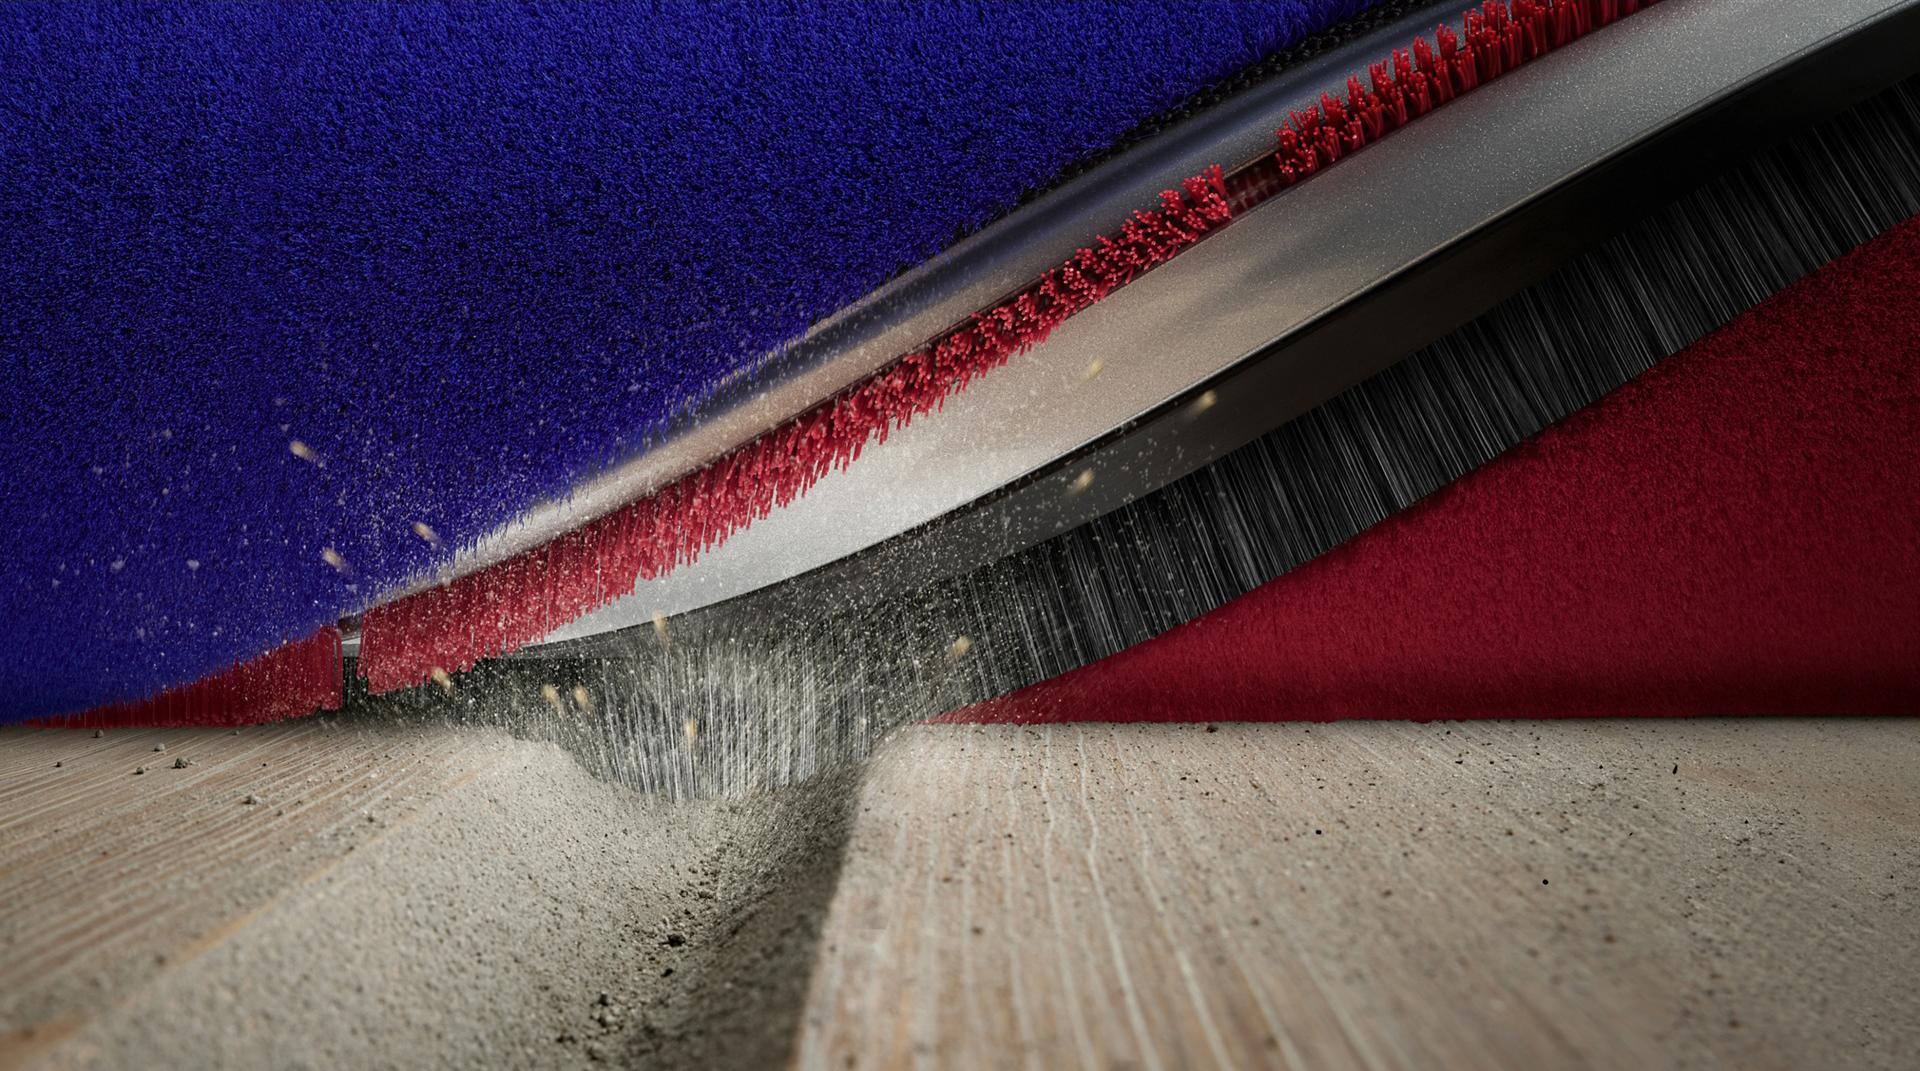 Close-up of the brush bar's carbon fibre filaments